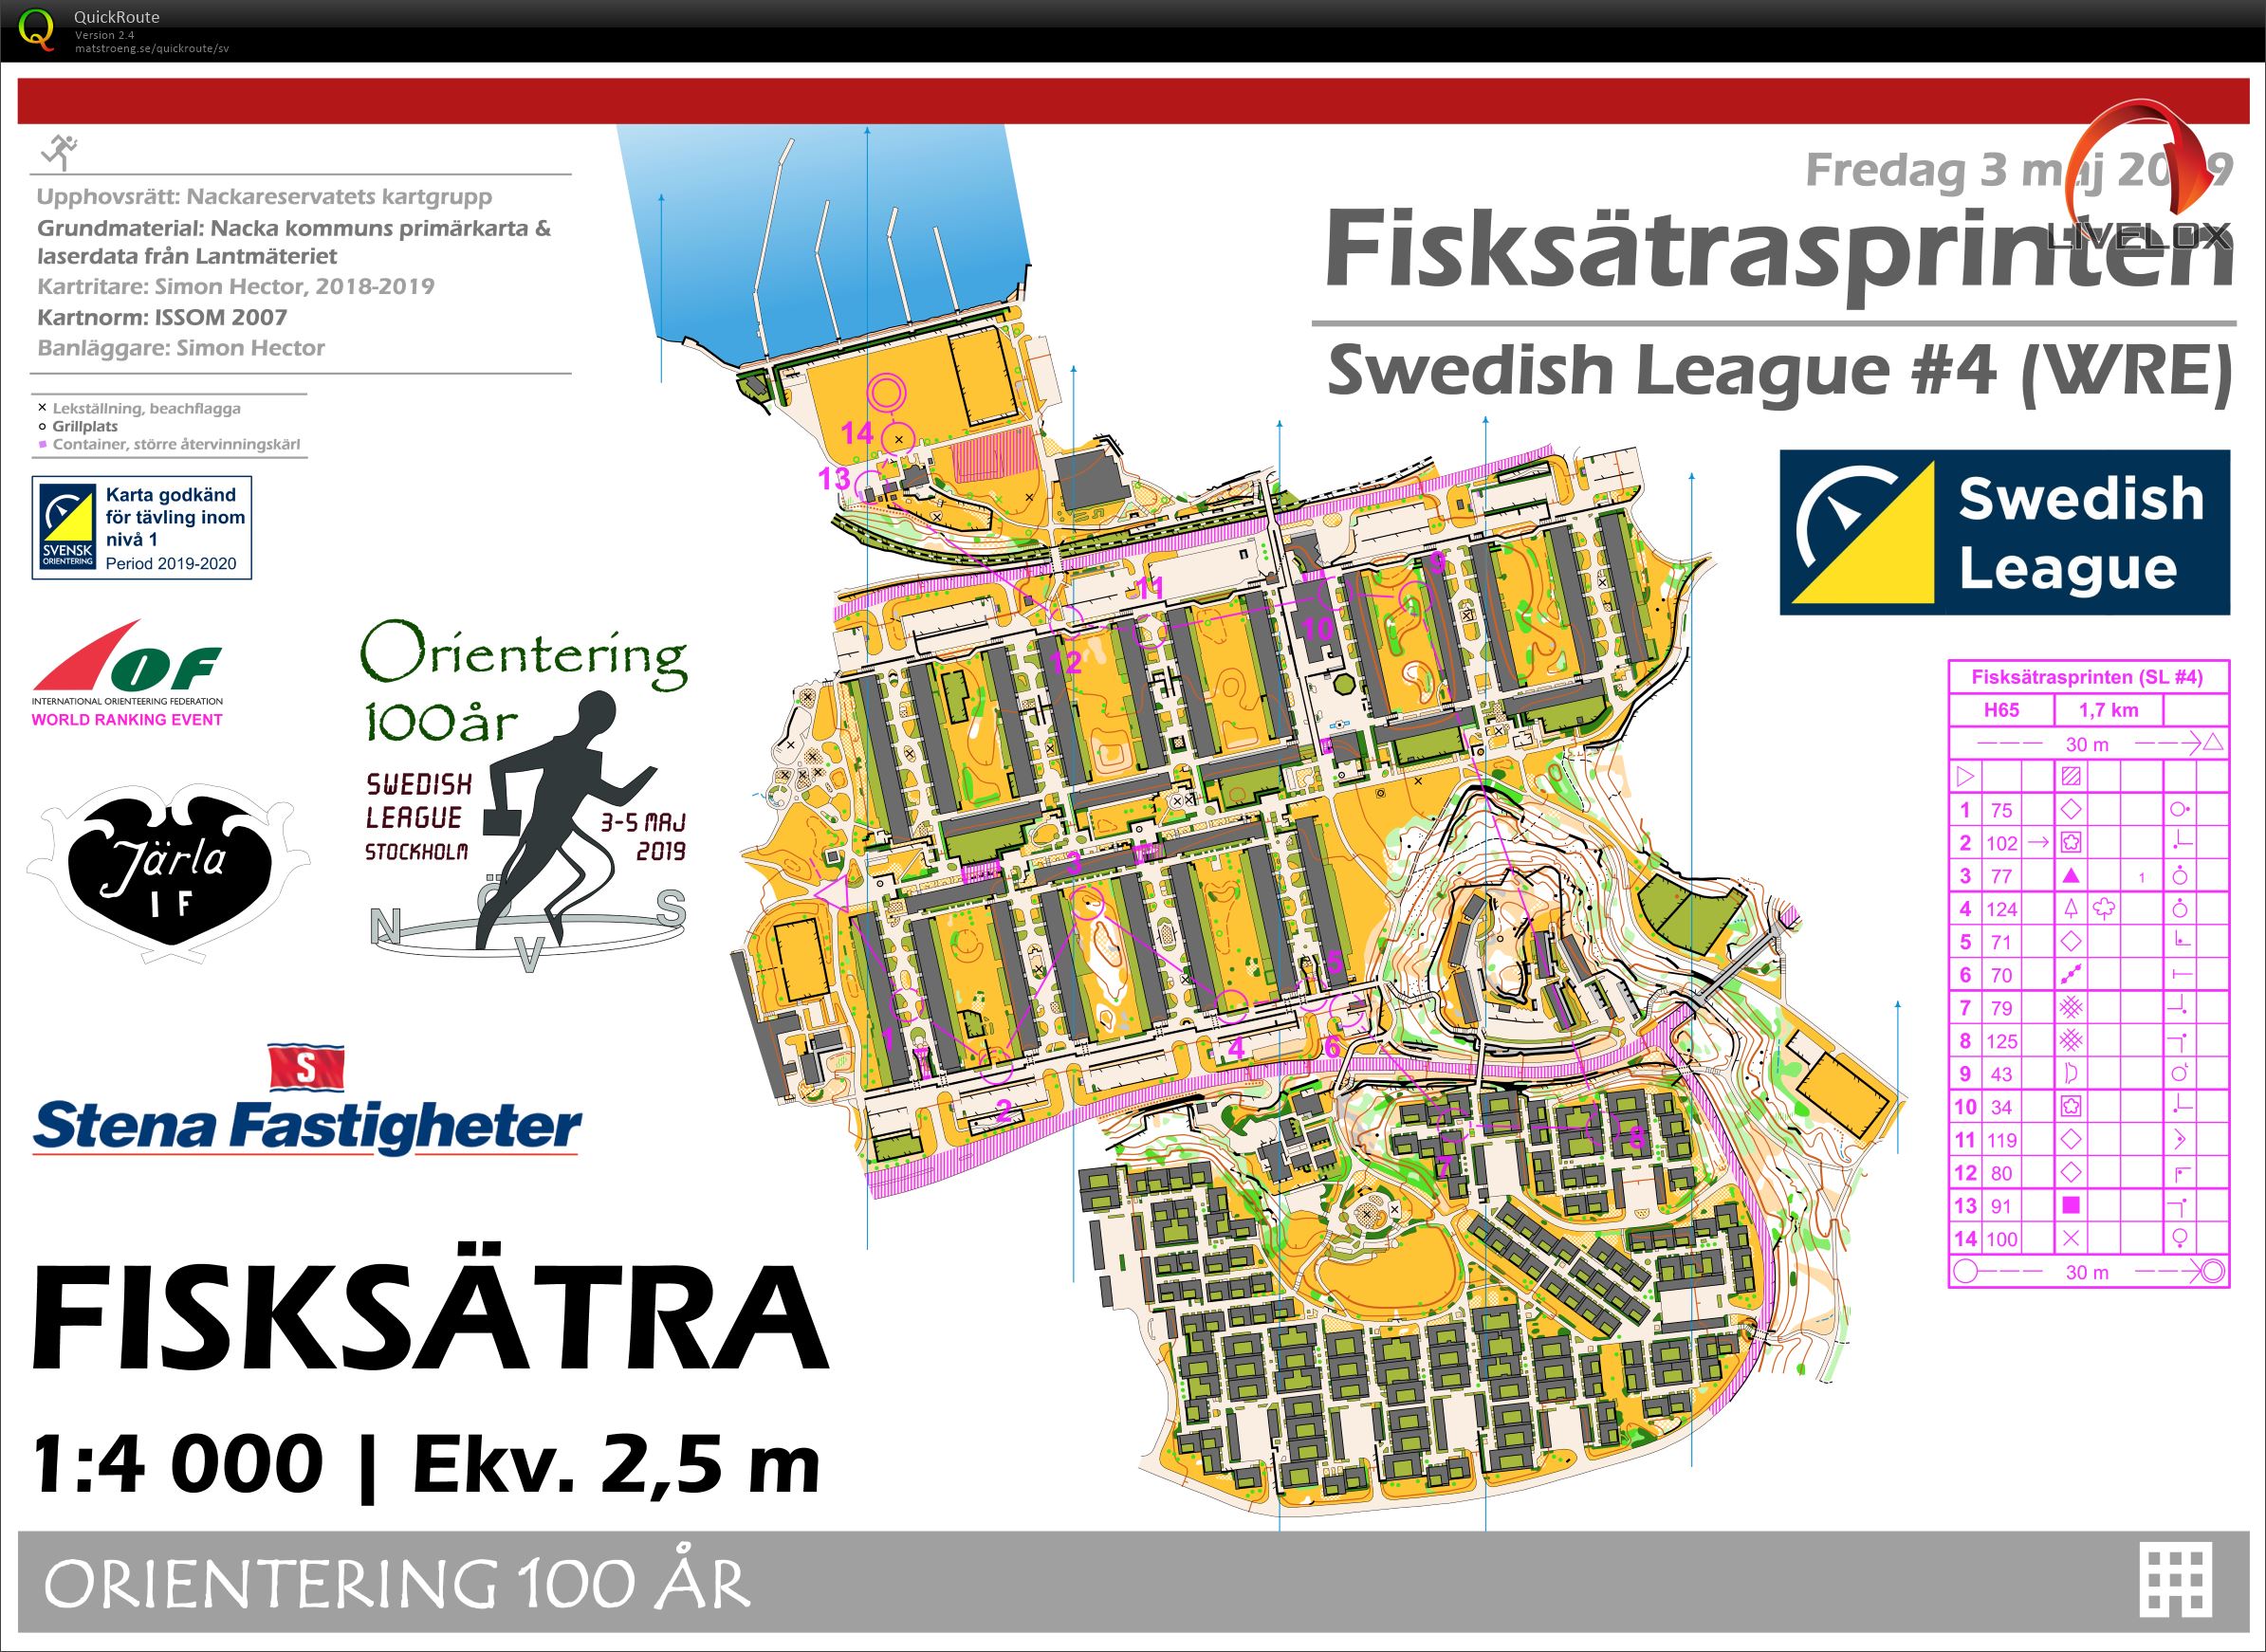 Fisksätrasprinten (03.05.2019)